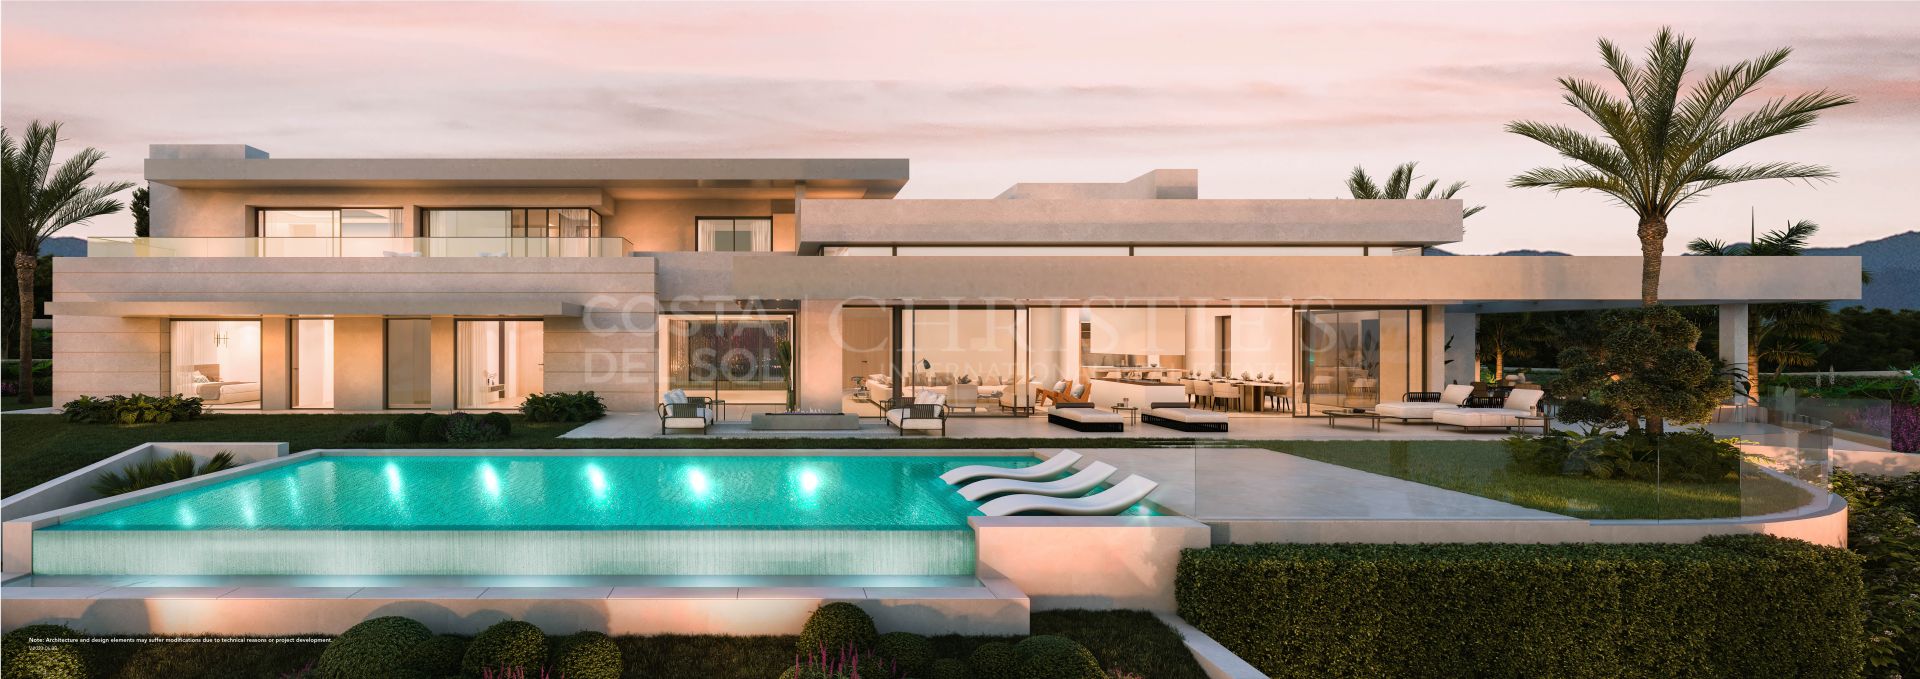 ELIE SAAB RESIDENCES, Sierra Blanca, Marbella Golden Mile - Elie Saab Residences | Christie’s International Real Estate